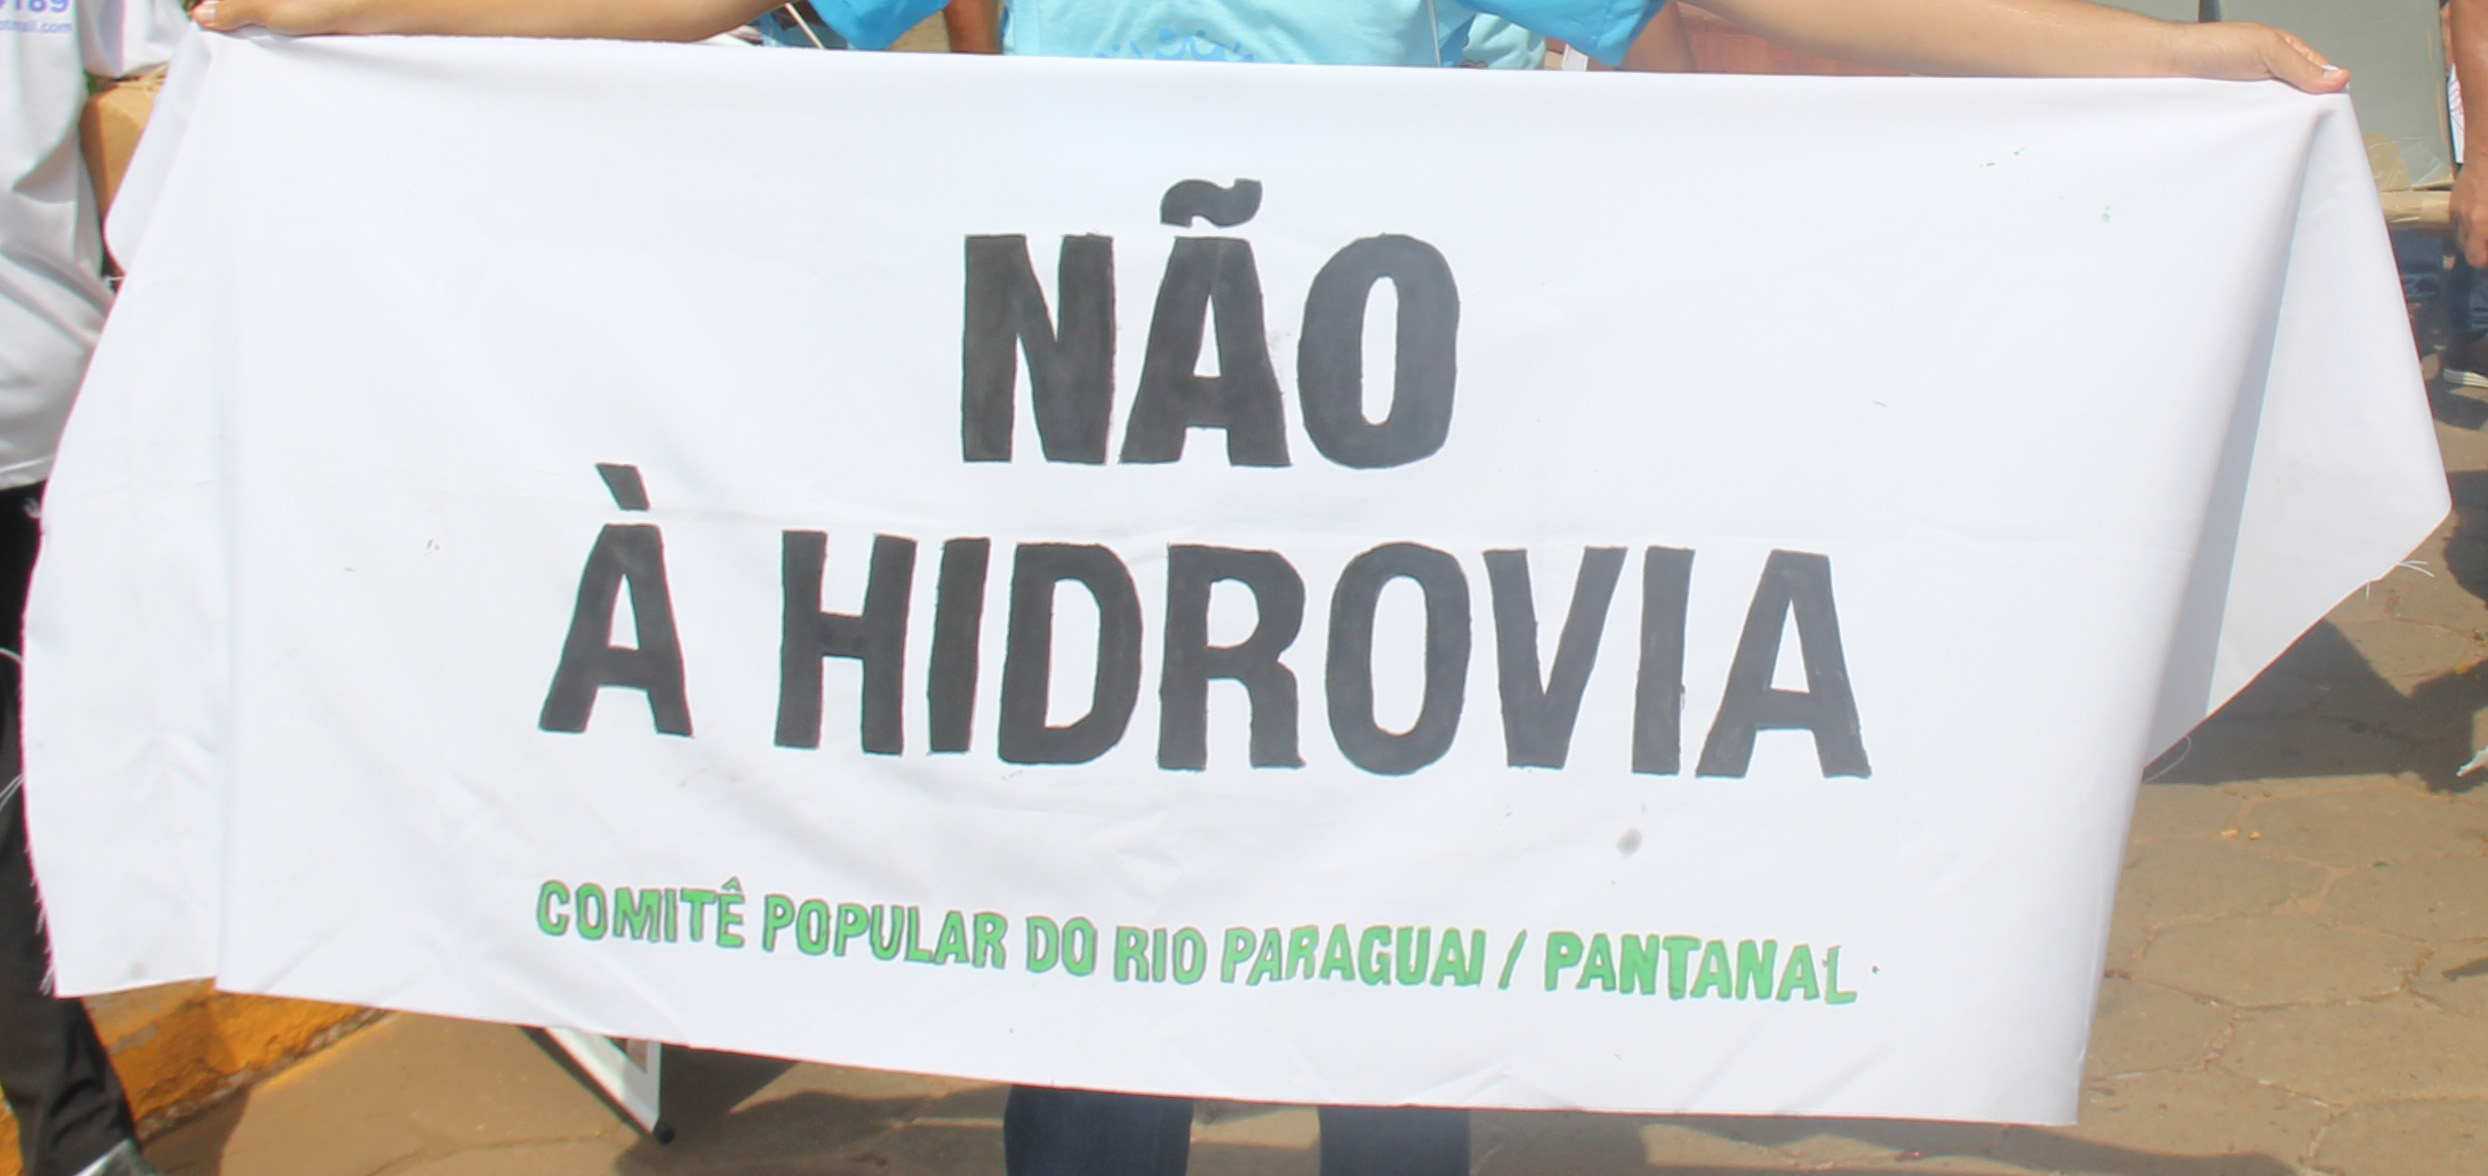 NO A LA HIDROVIA! en la celebracion del Rio Paraguay, Caceres, Brasil 2018